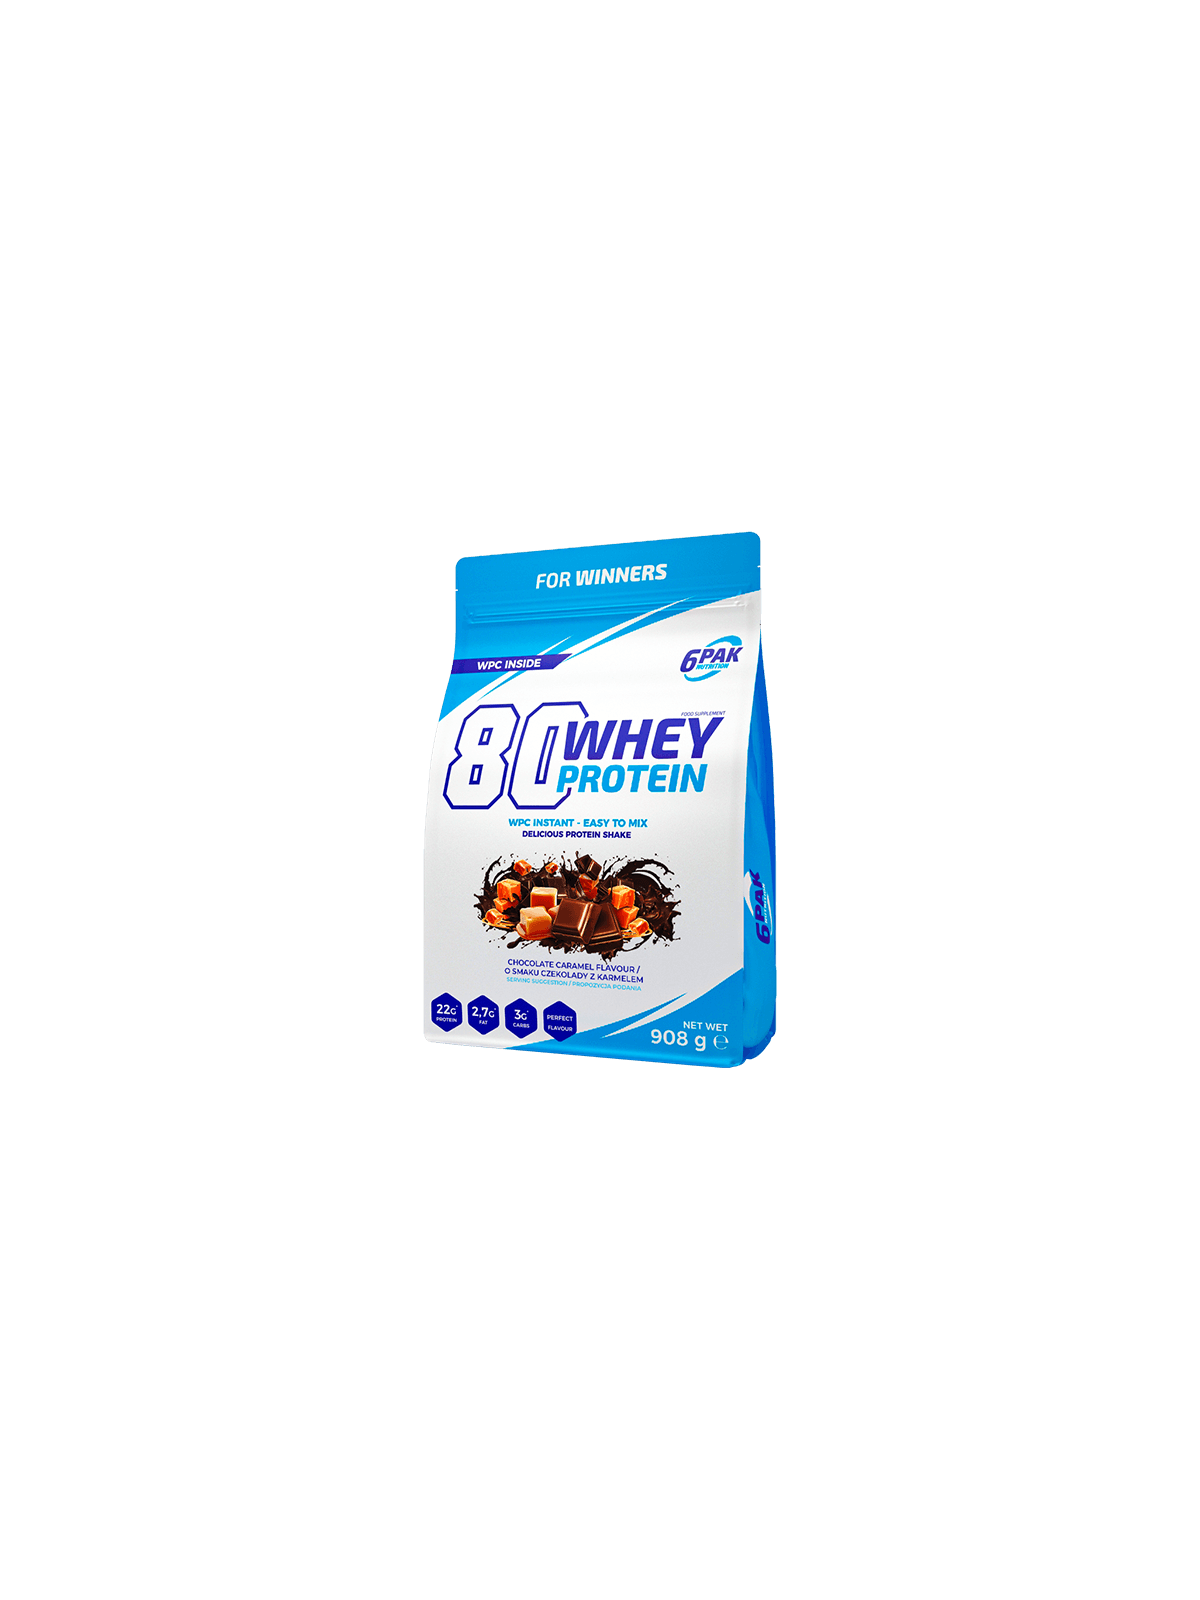 Białko 80 Whey Protein - 908g - Chocolate-Caramel